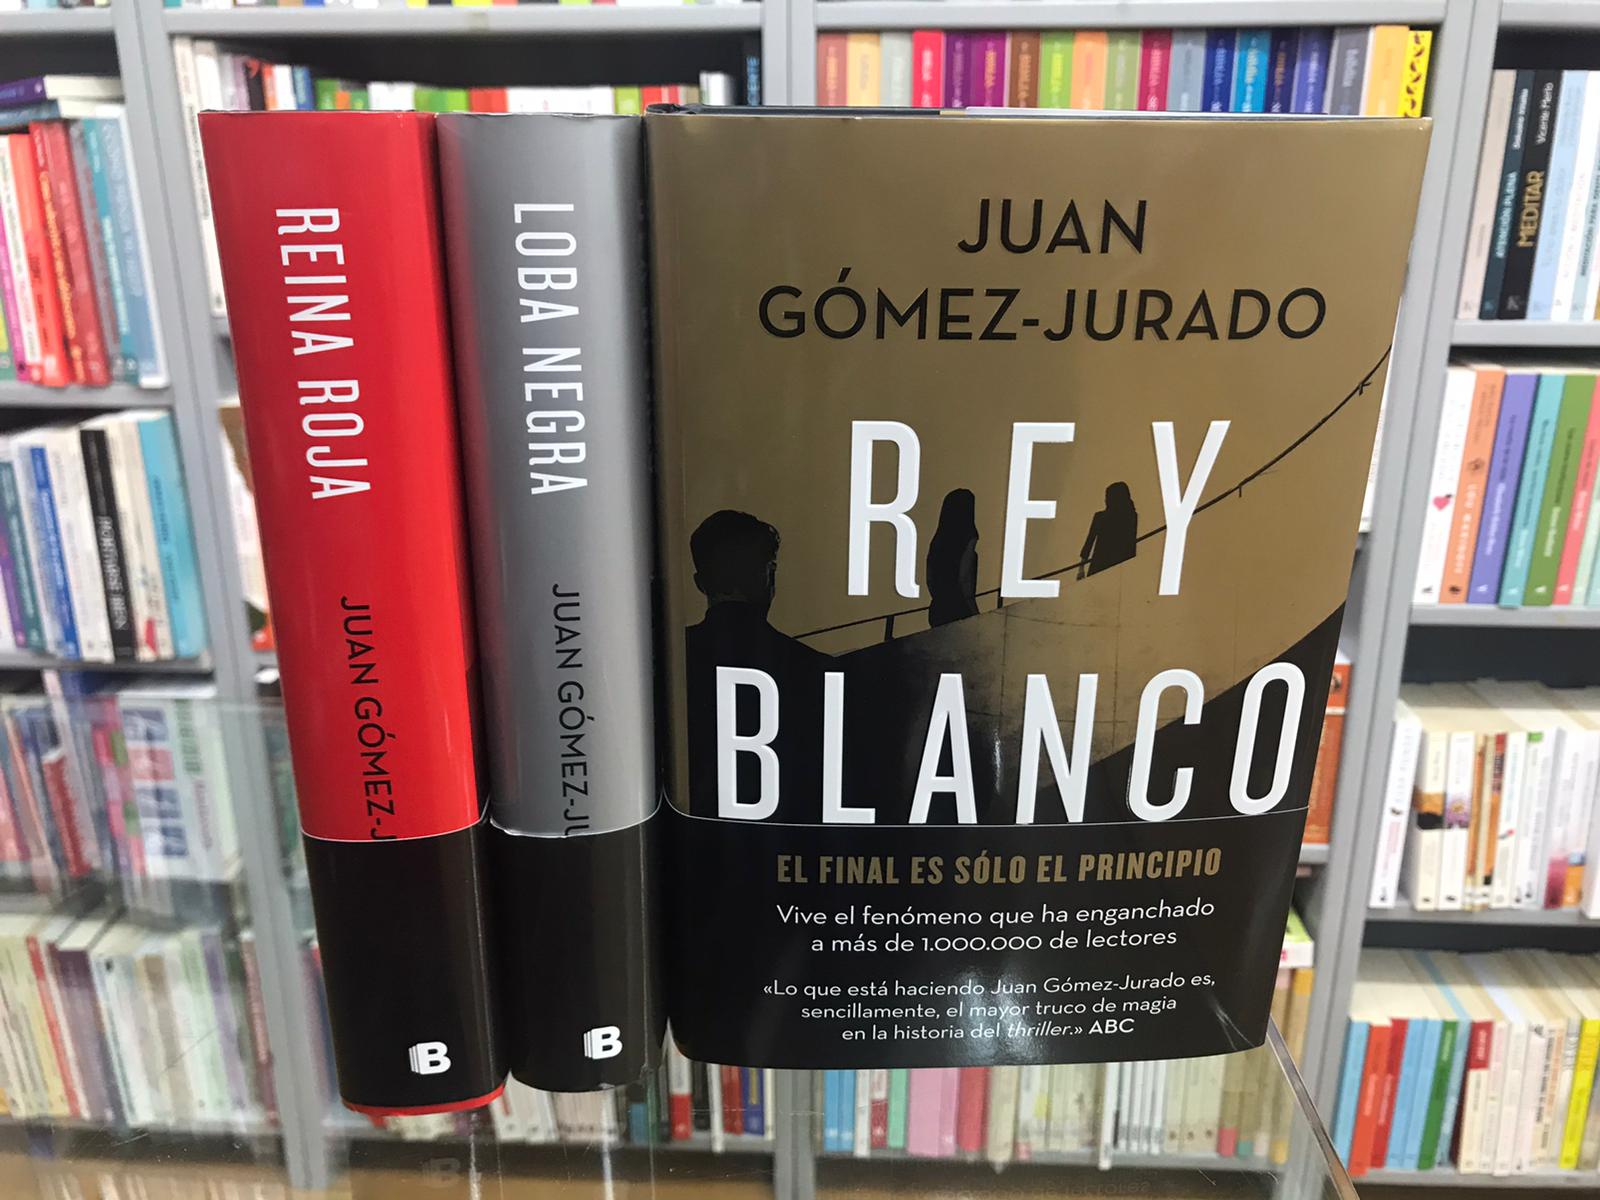 Reivindicación del best seller: Juan Gómez-Jurado